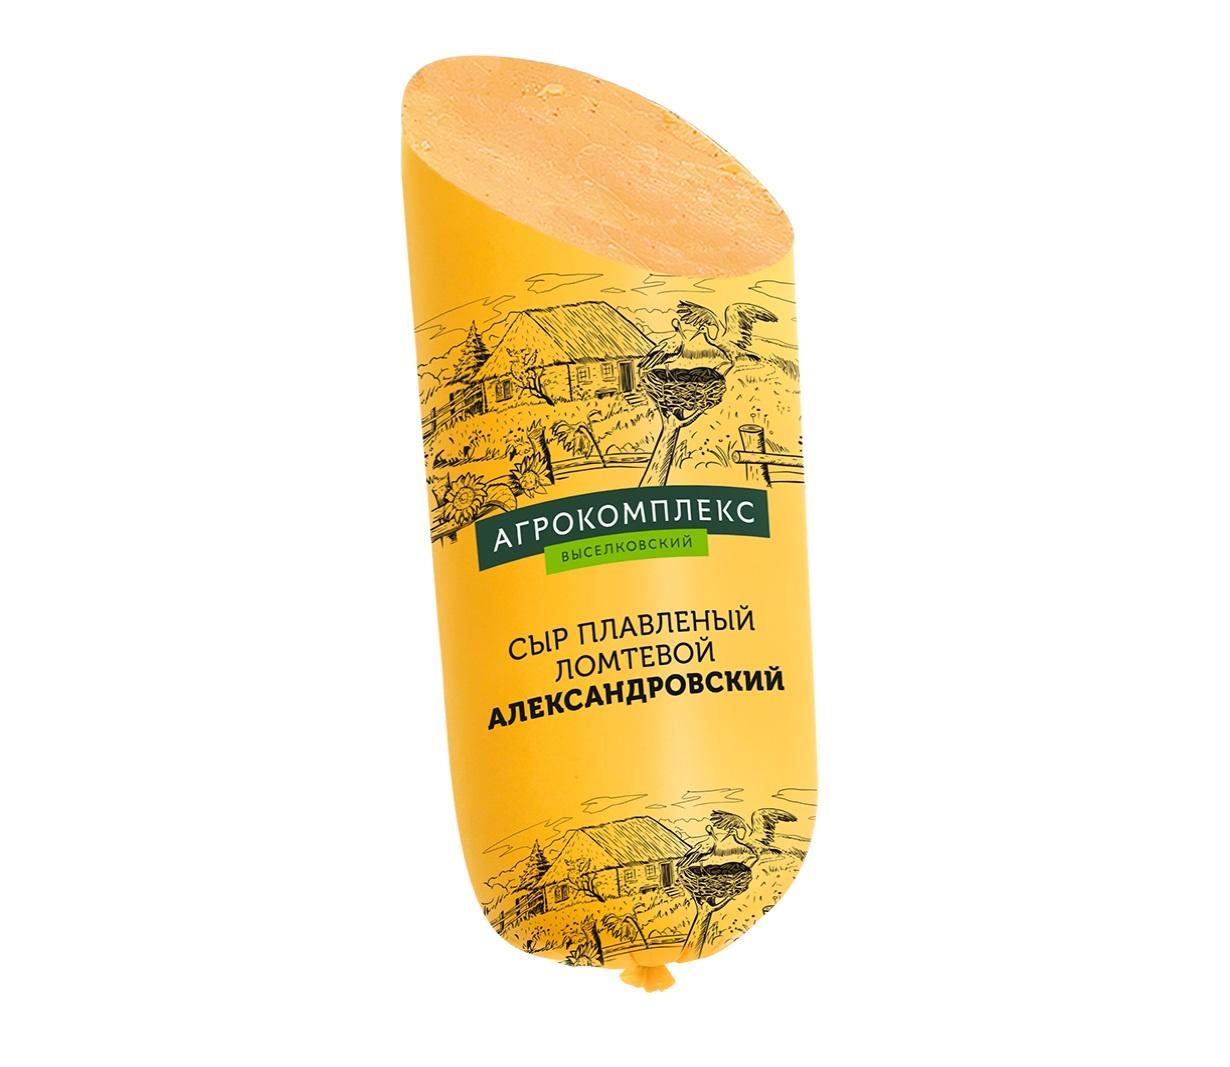 Сыр Сыры Кубани плавленый ломтики Александровский 40%, 1 кг., оболочка